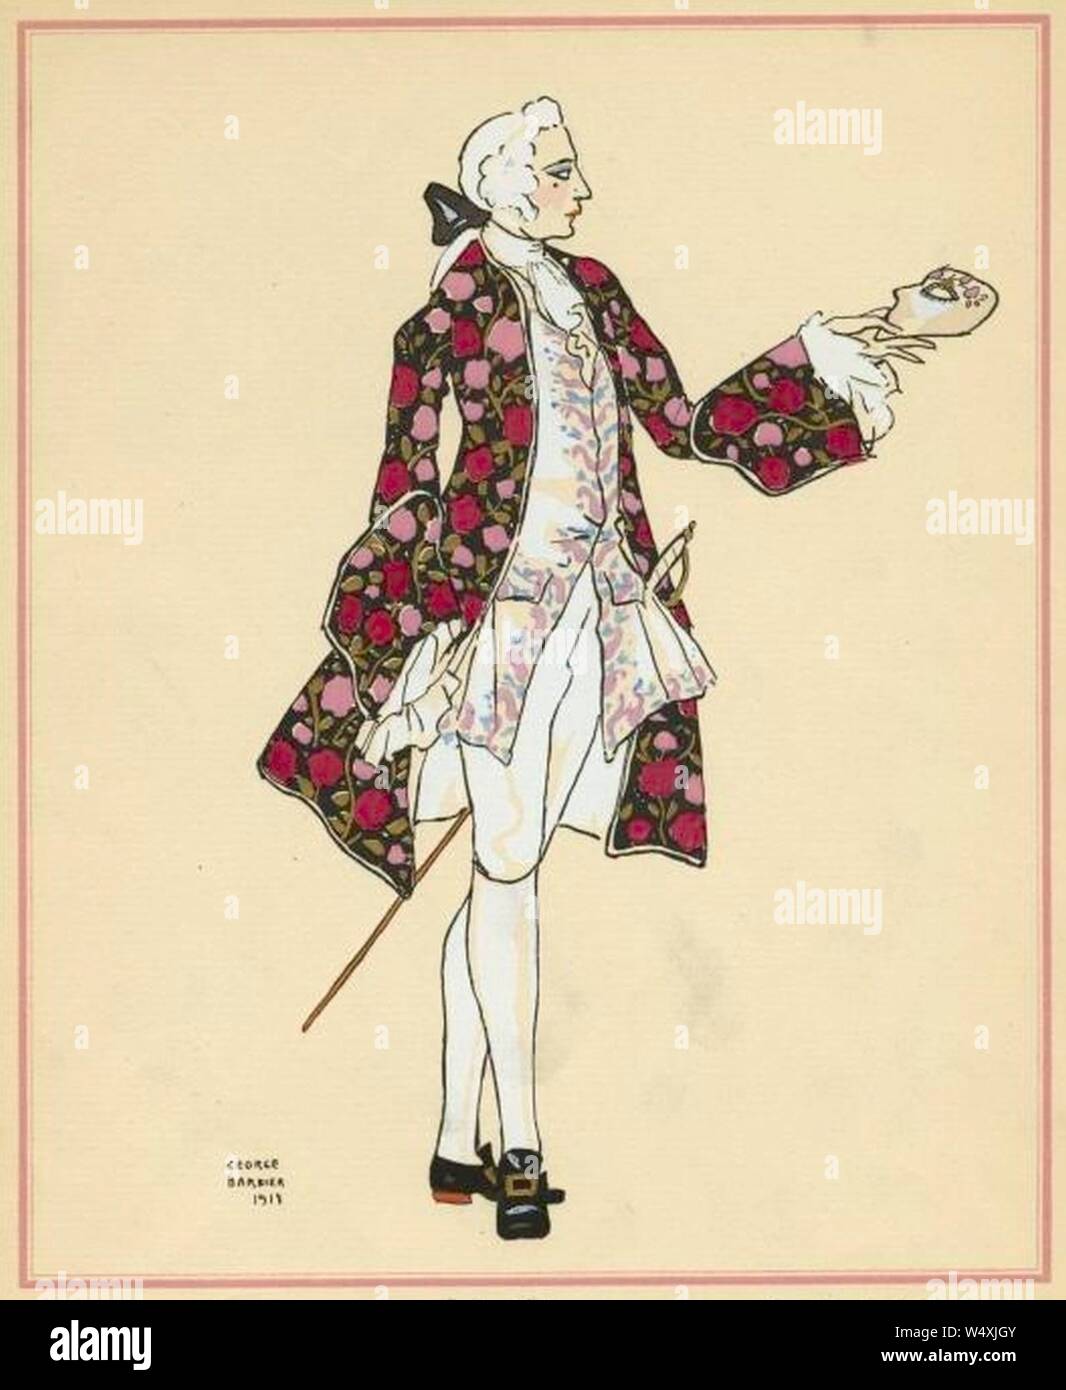 Kostüm für Maurice das Edmond-rostand Casanova von George Barbier. Stockfoto